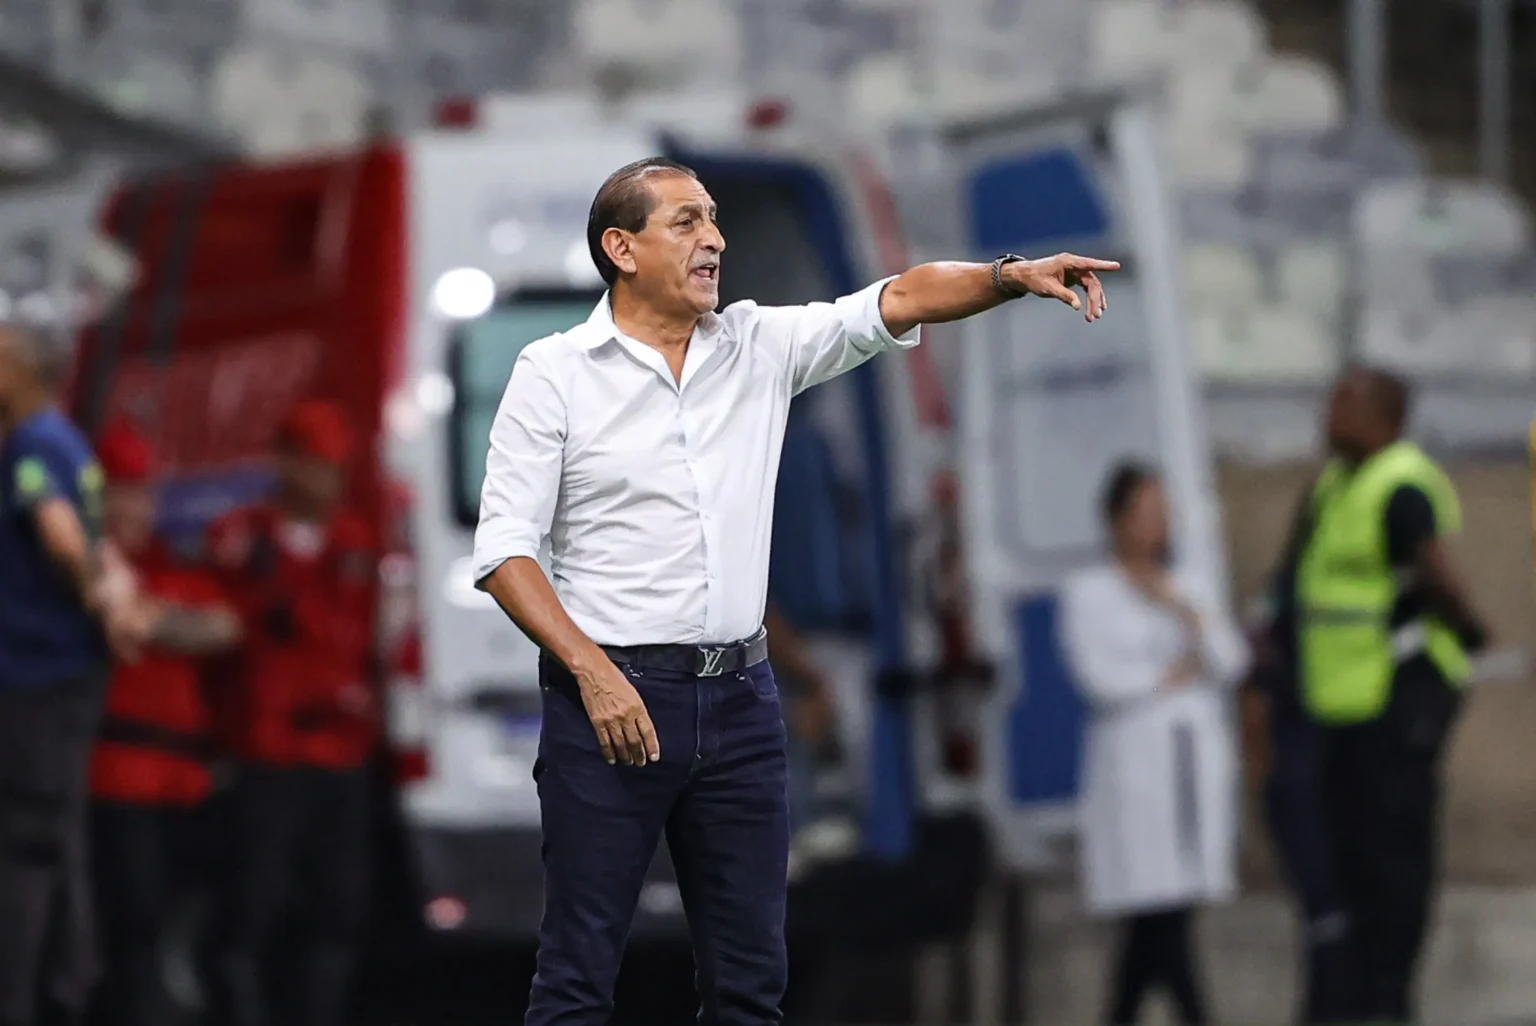 "Corinthians Busca Agilizar a Contratação de Novo Treinador, Evitando Prolongados Processos de Negociação"